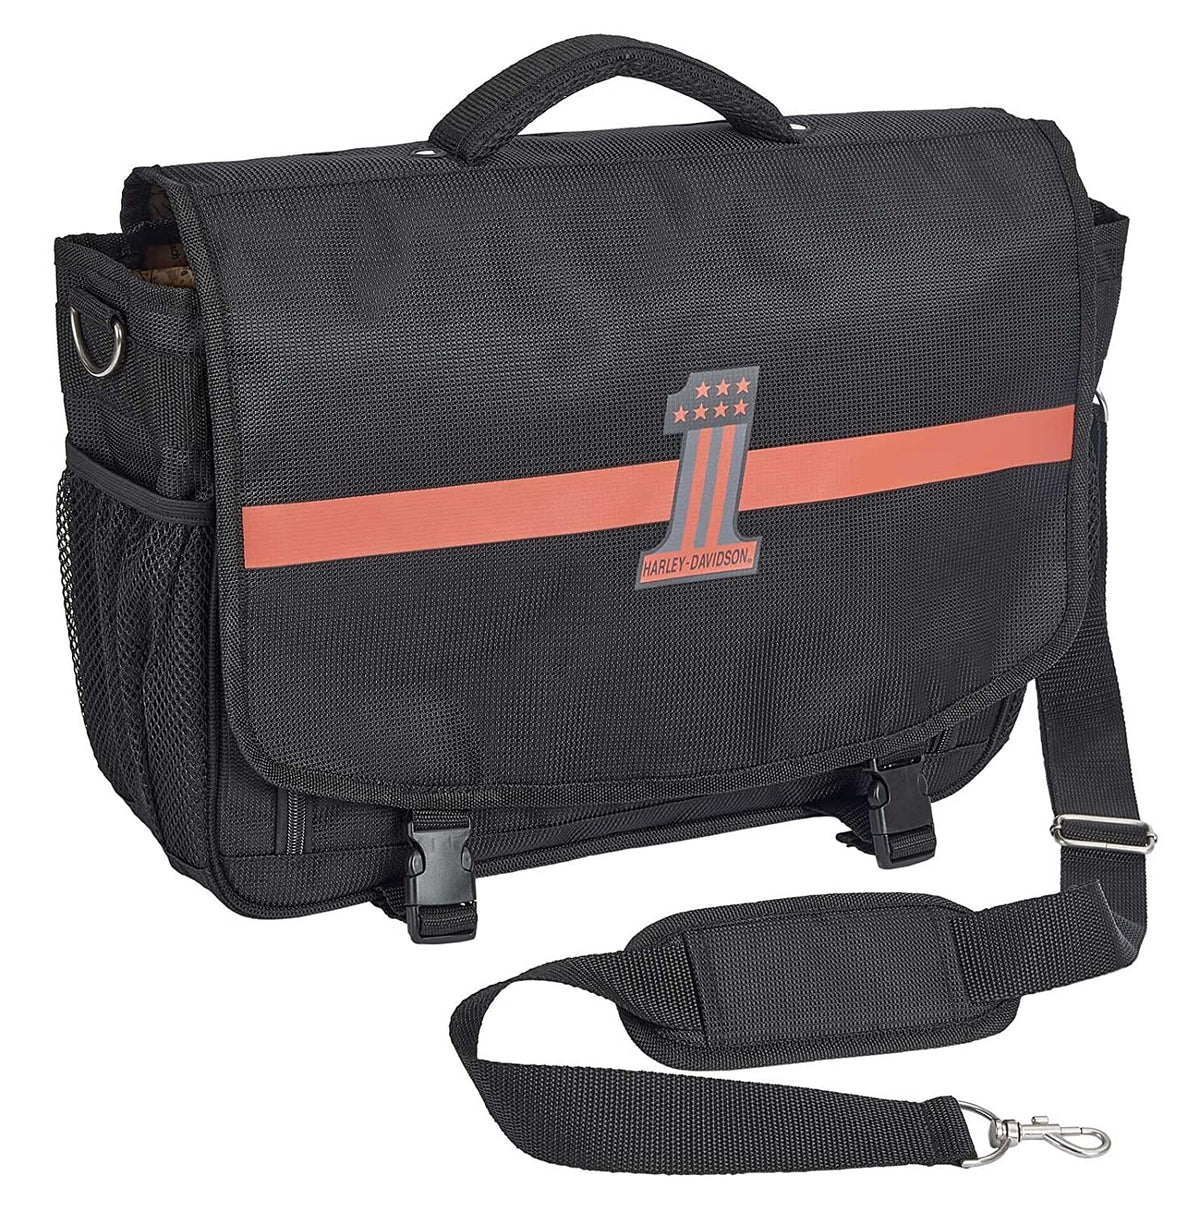 Harley-Davidson #1 Messenger Bag